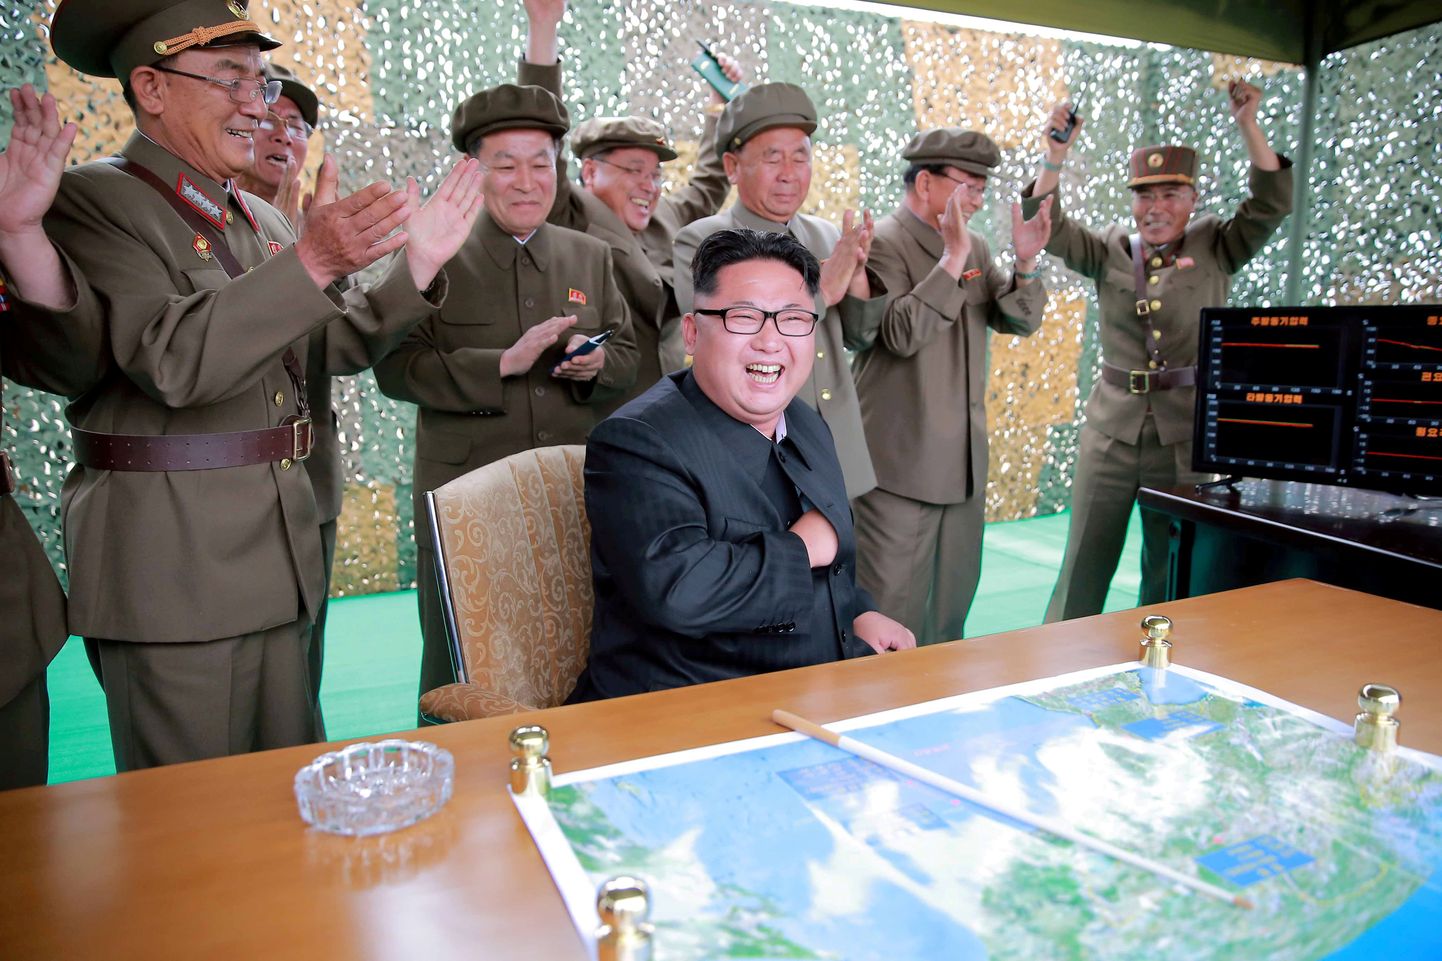 Põhja-Korea riikliku uudisteagentuuri foto väidetavalt edukat raketikatsetust tähistavatest Kim Jong-unist ja kõrgetest sõjaväelastest.